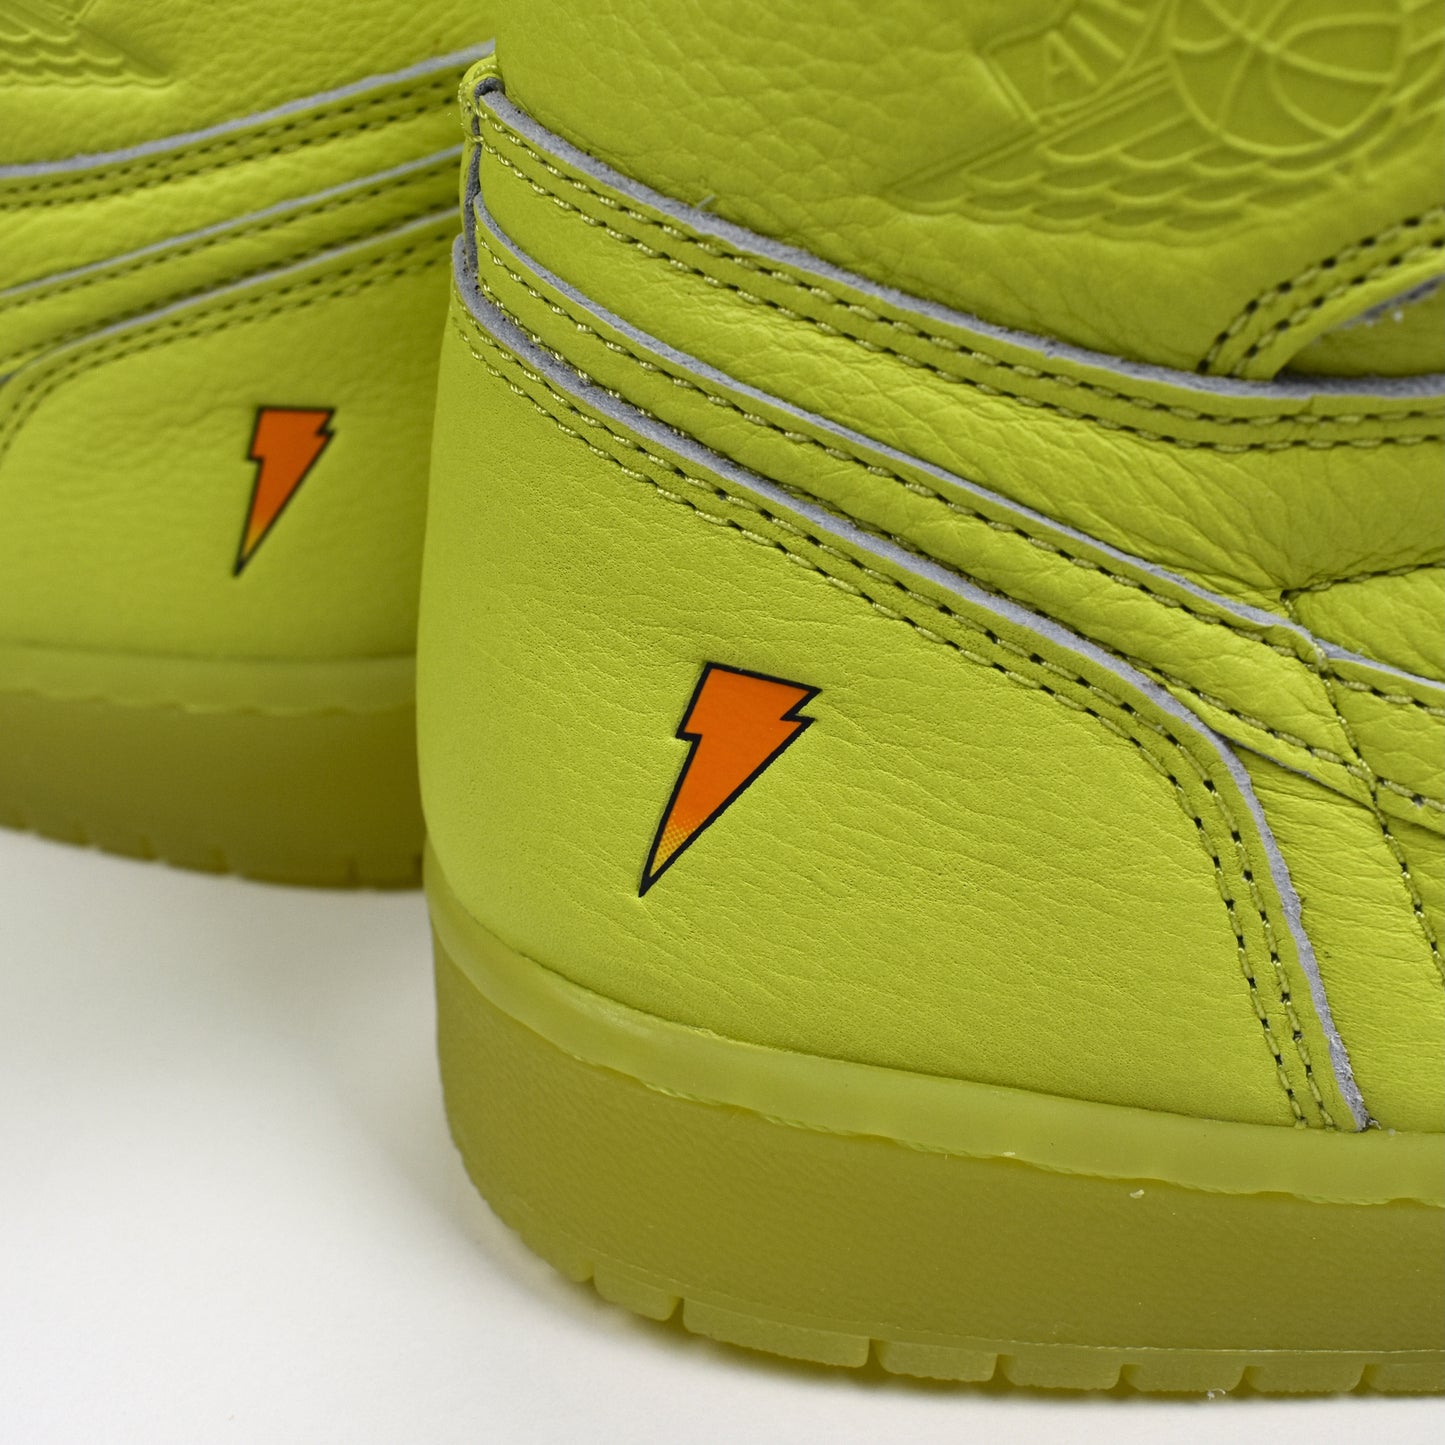 Nike - Air Jordan 1 Retro Hi OG Gatorade 'Lemon Lime'